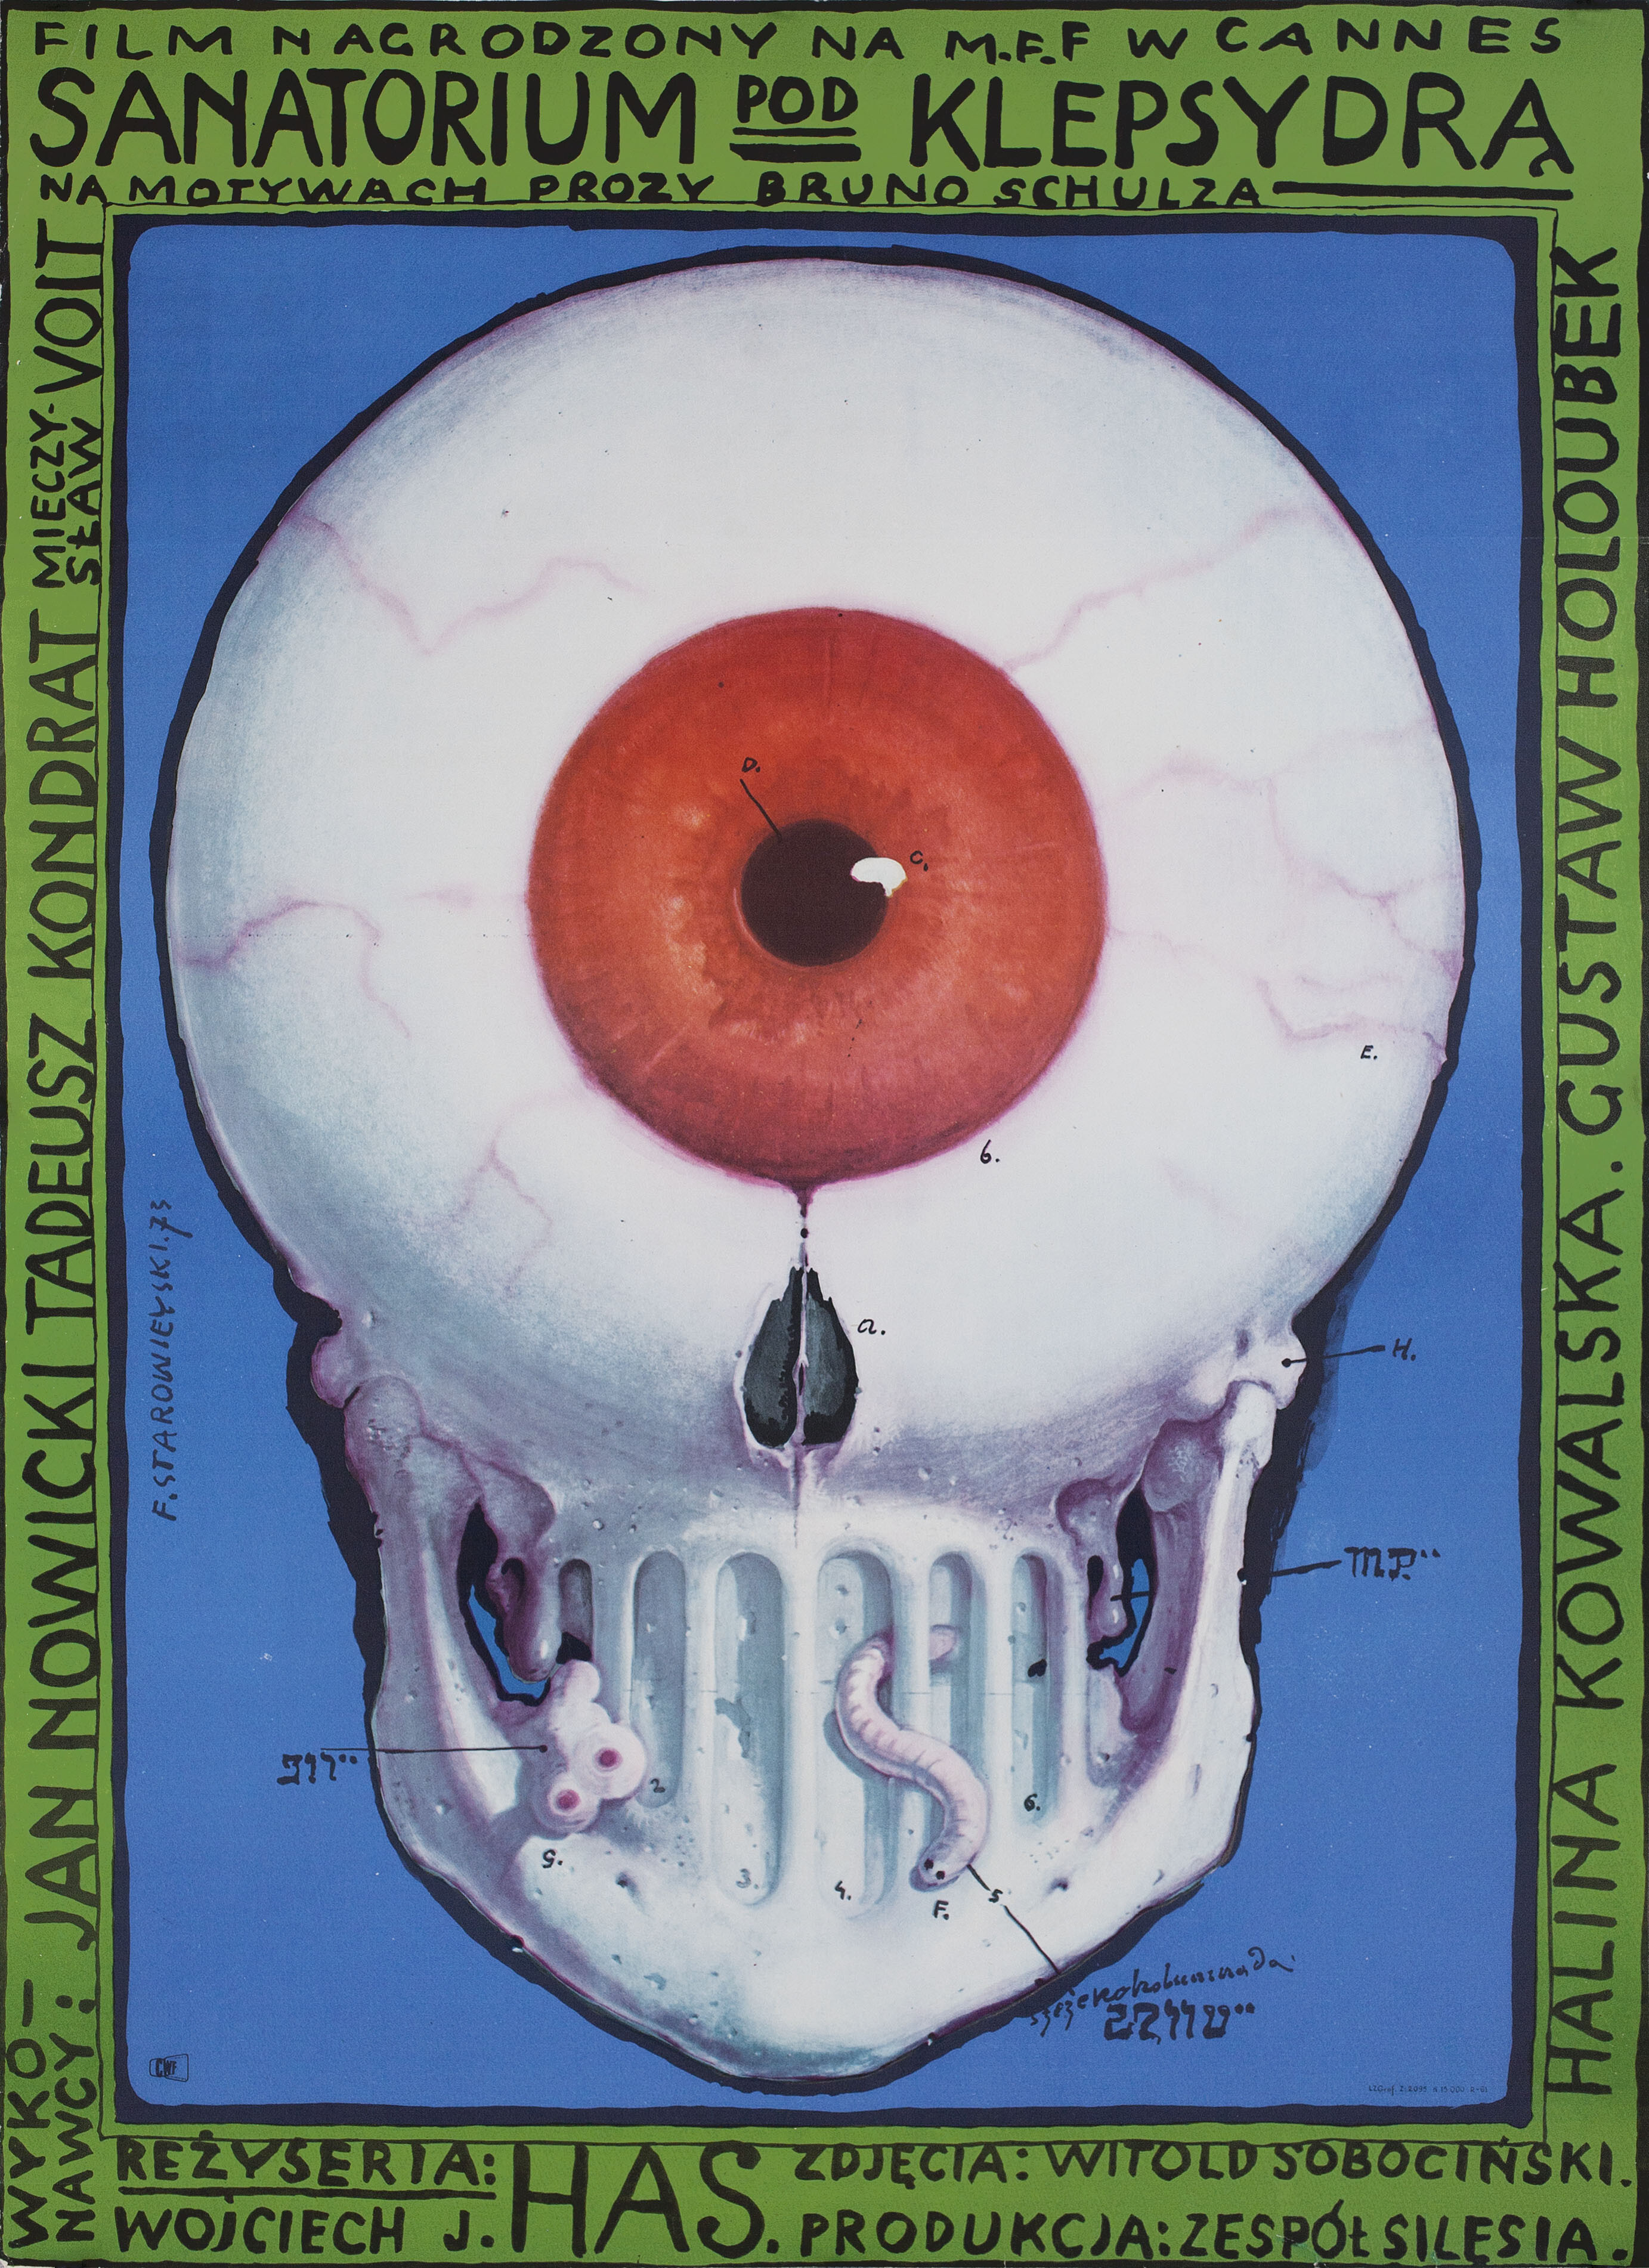 Санаторий Под клепсидрой (The Hourglass Sanatorium, 1973), режиссёр Войцех Хас, польский плакат к фильму, 1973 год, автор Францишек Старовейский